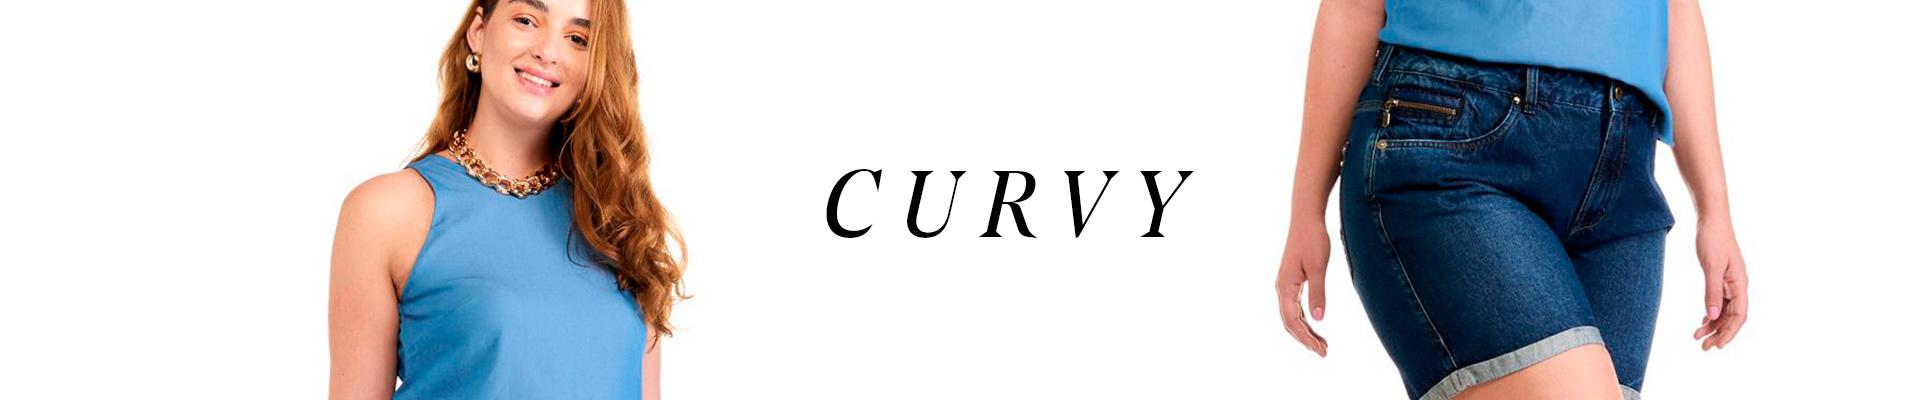 Curvy | 1920x400